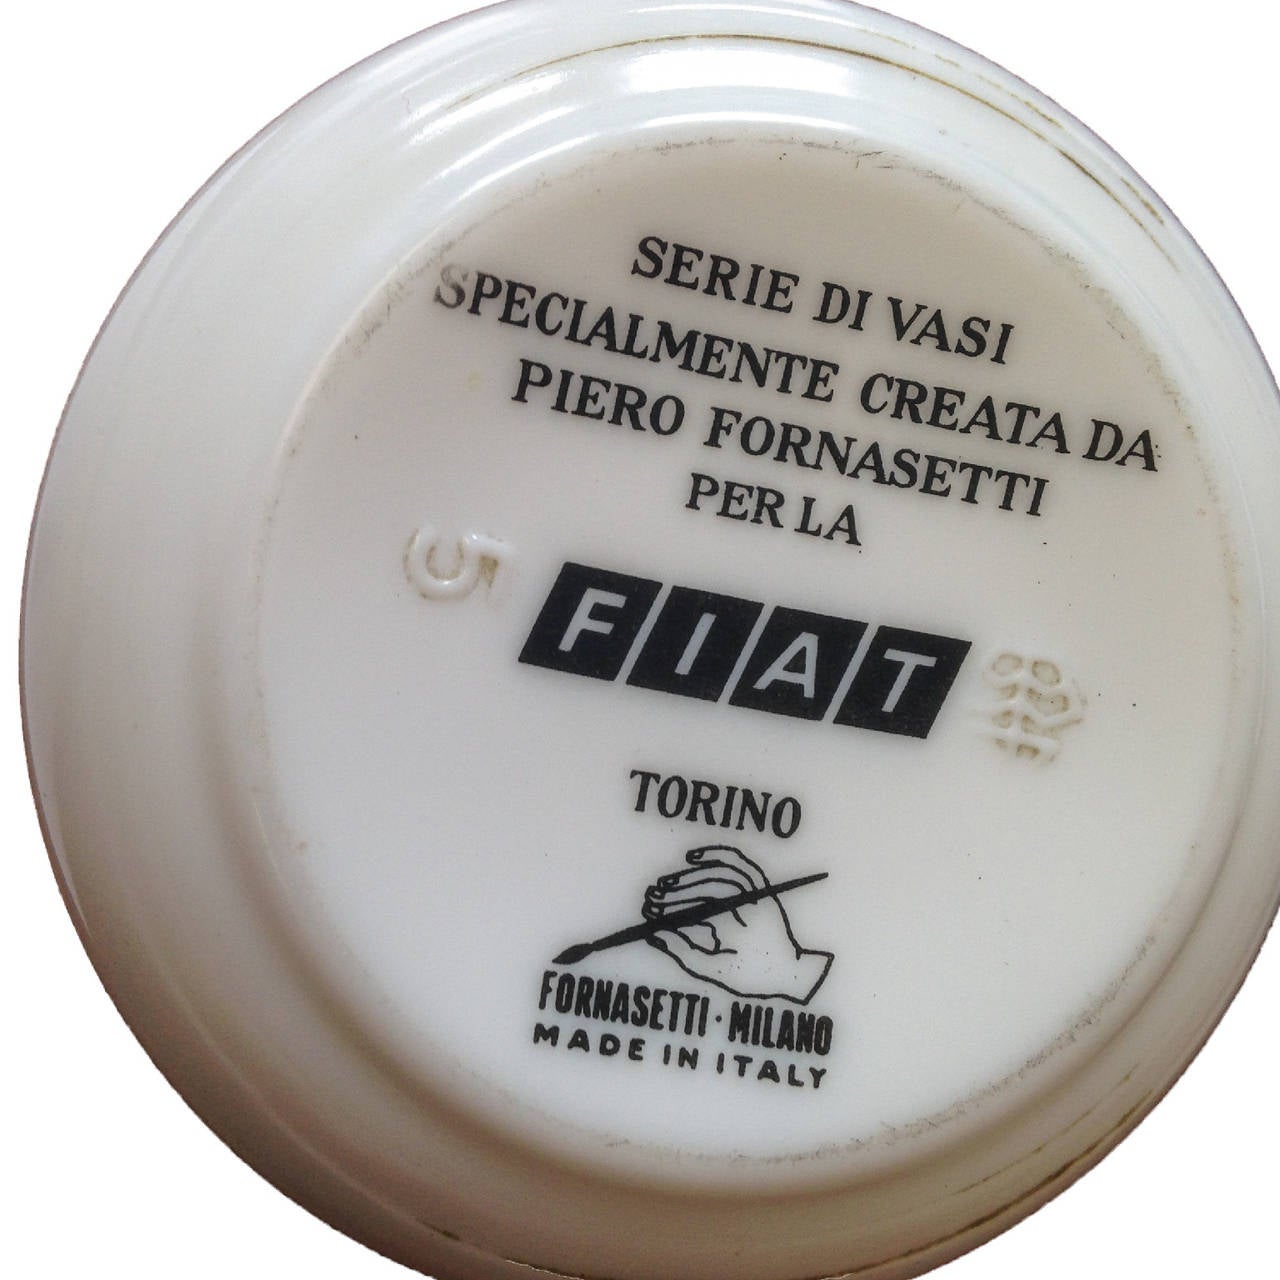 Italian Fornasetti Porcelain Jars Made for Fiat